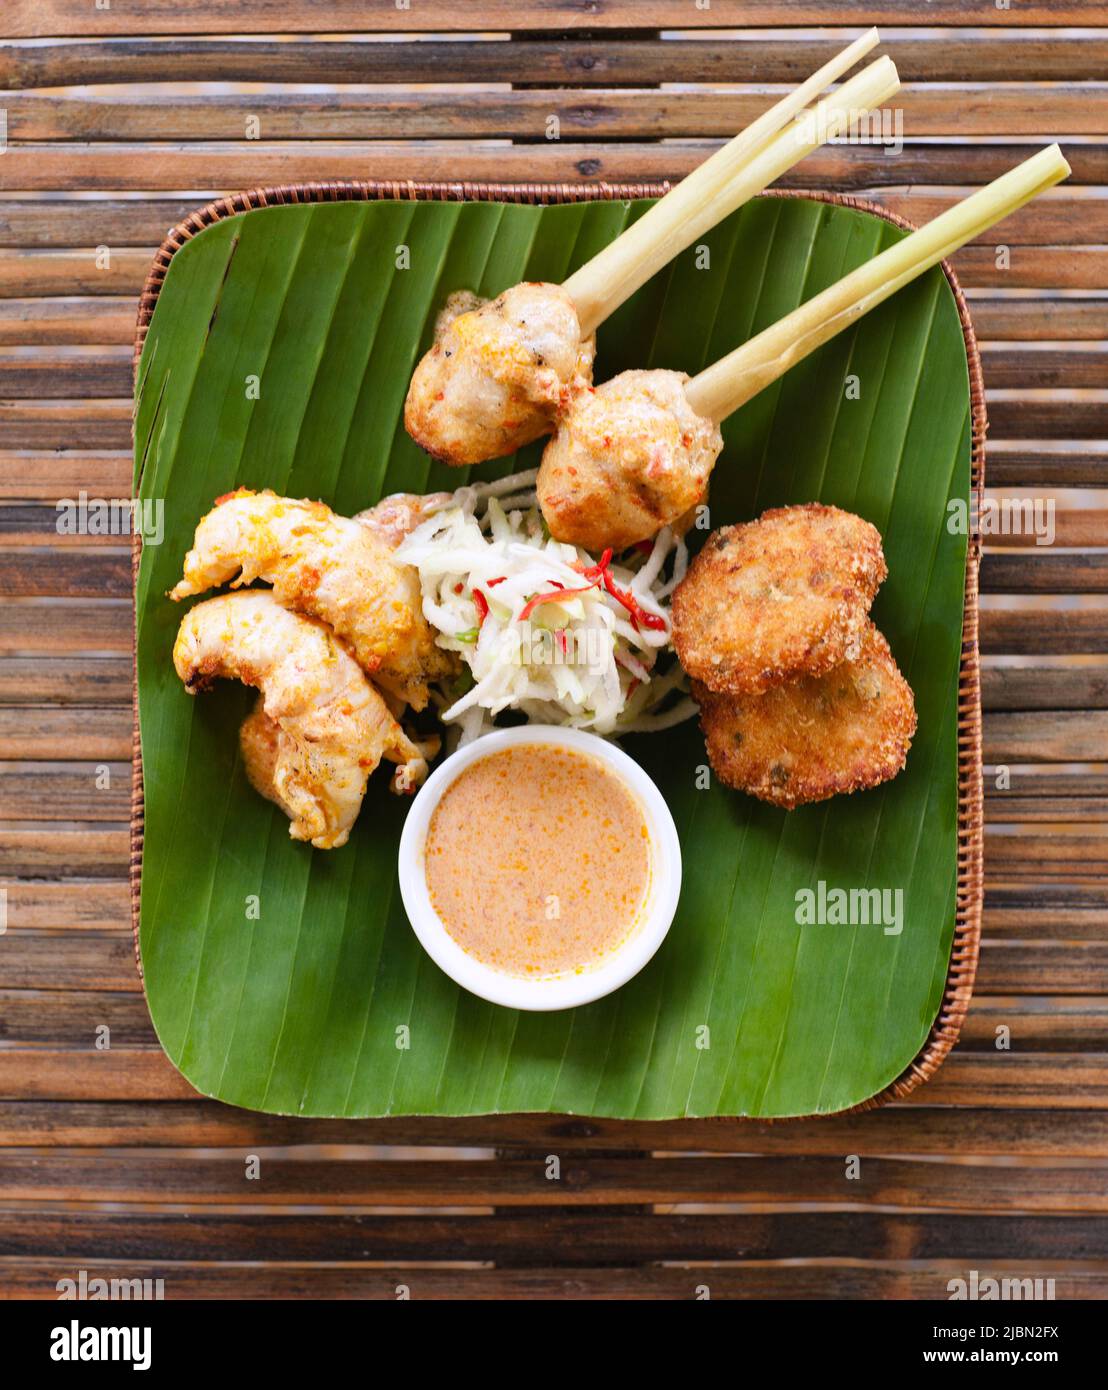 Meeresfrüchte Anti-Pasta-Teller mit Garnelenkuchen, balinesischer Meeresfrüchte-Satay auf Zitronengrasspießen und chargrilled Rock Hummer. Stockfoto